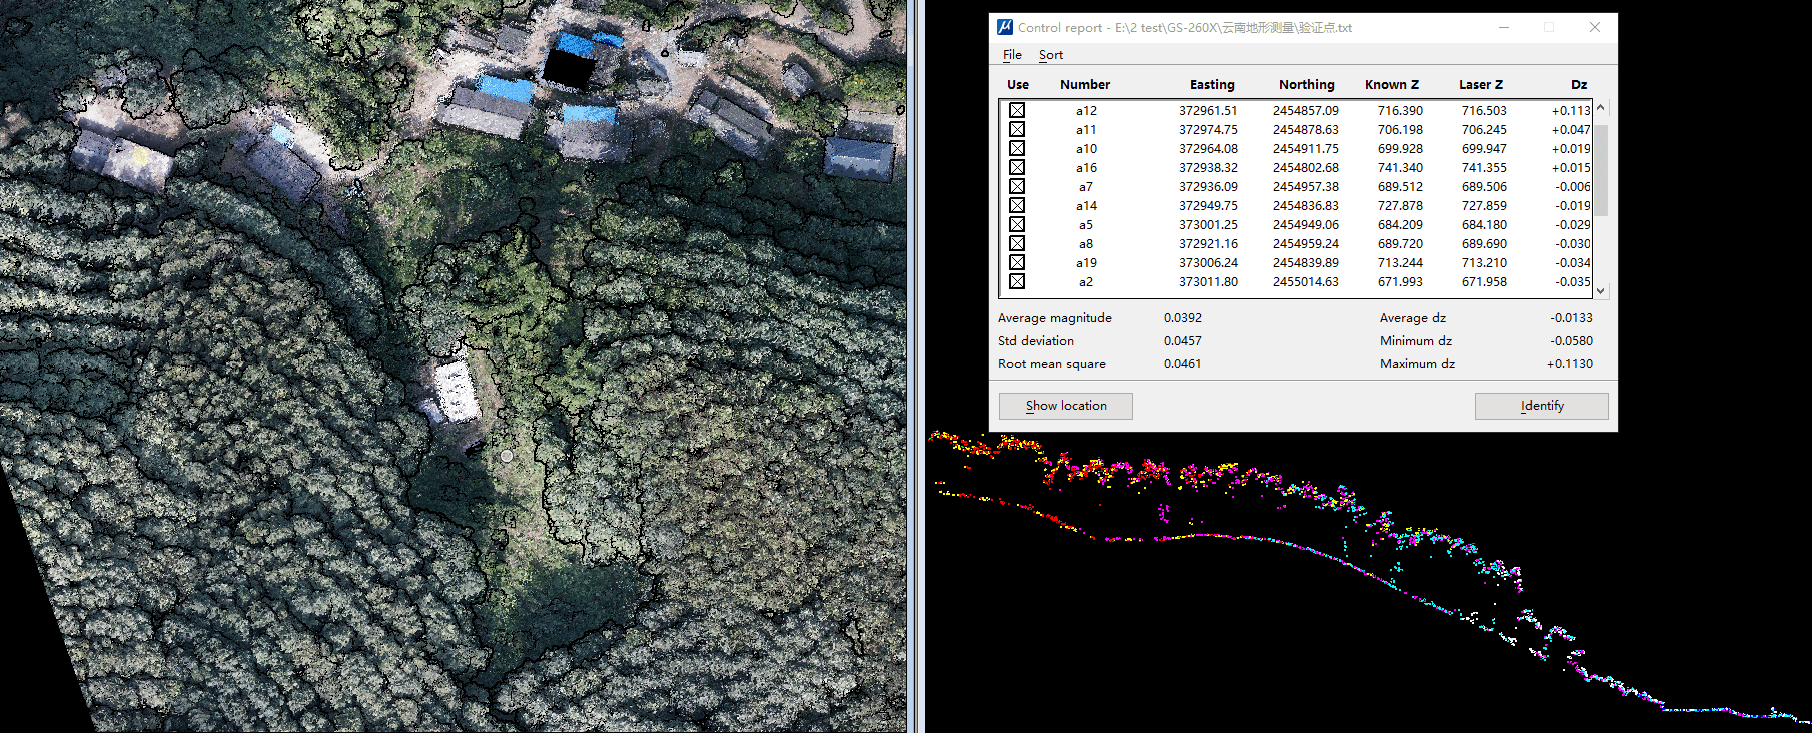 122cc太阳集成游戏激光雷达测量系统在地形测量测绘中的应用